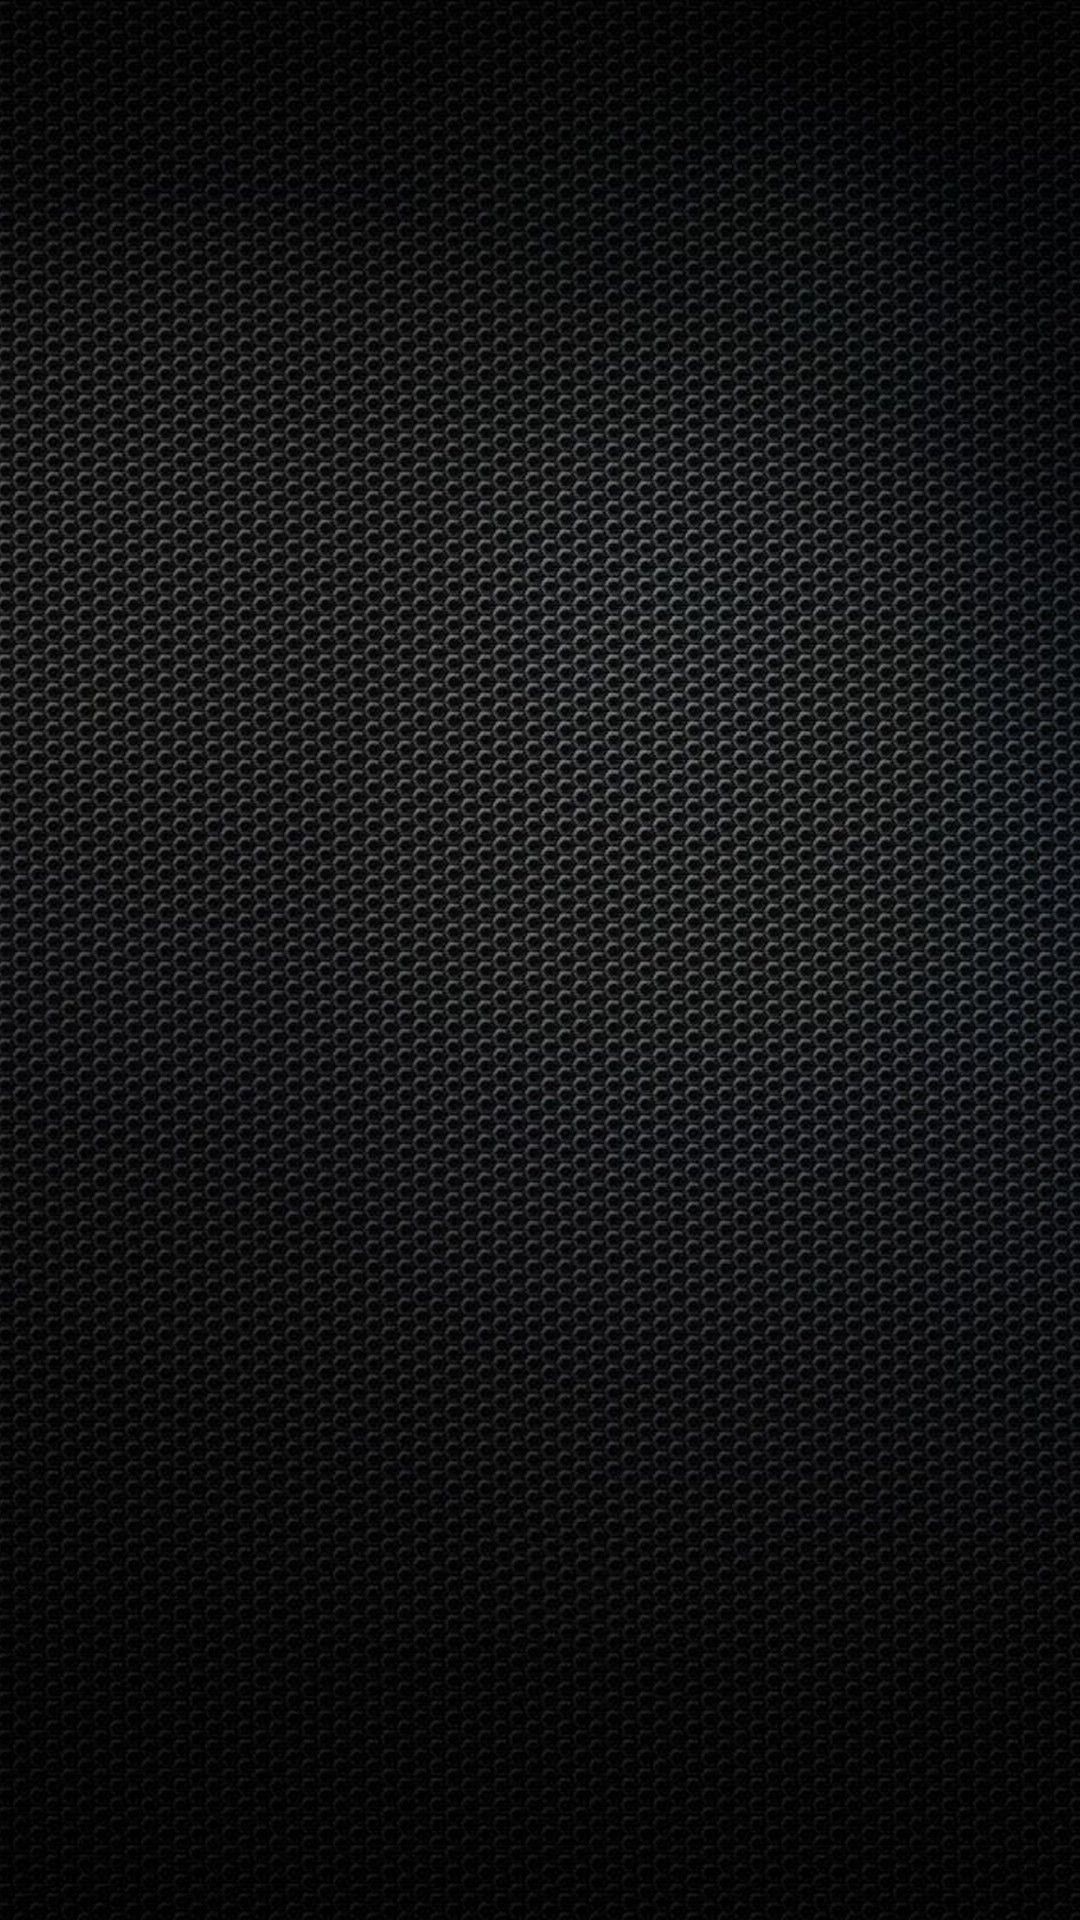 1080x1920 Black iPhone 6 Plus Wallpaper - WallpaperSafari